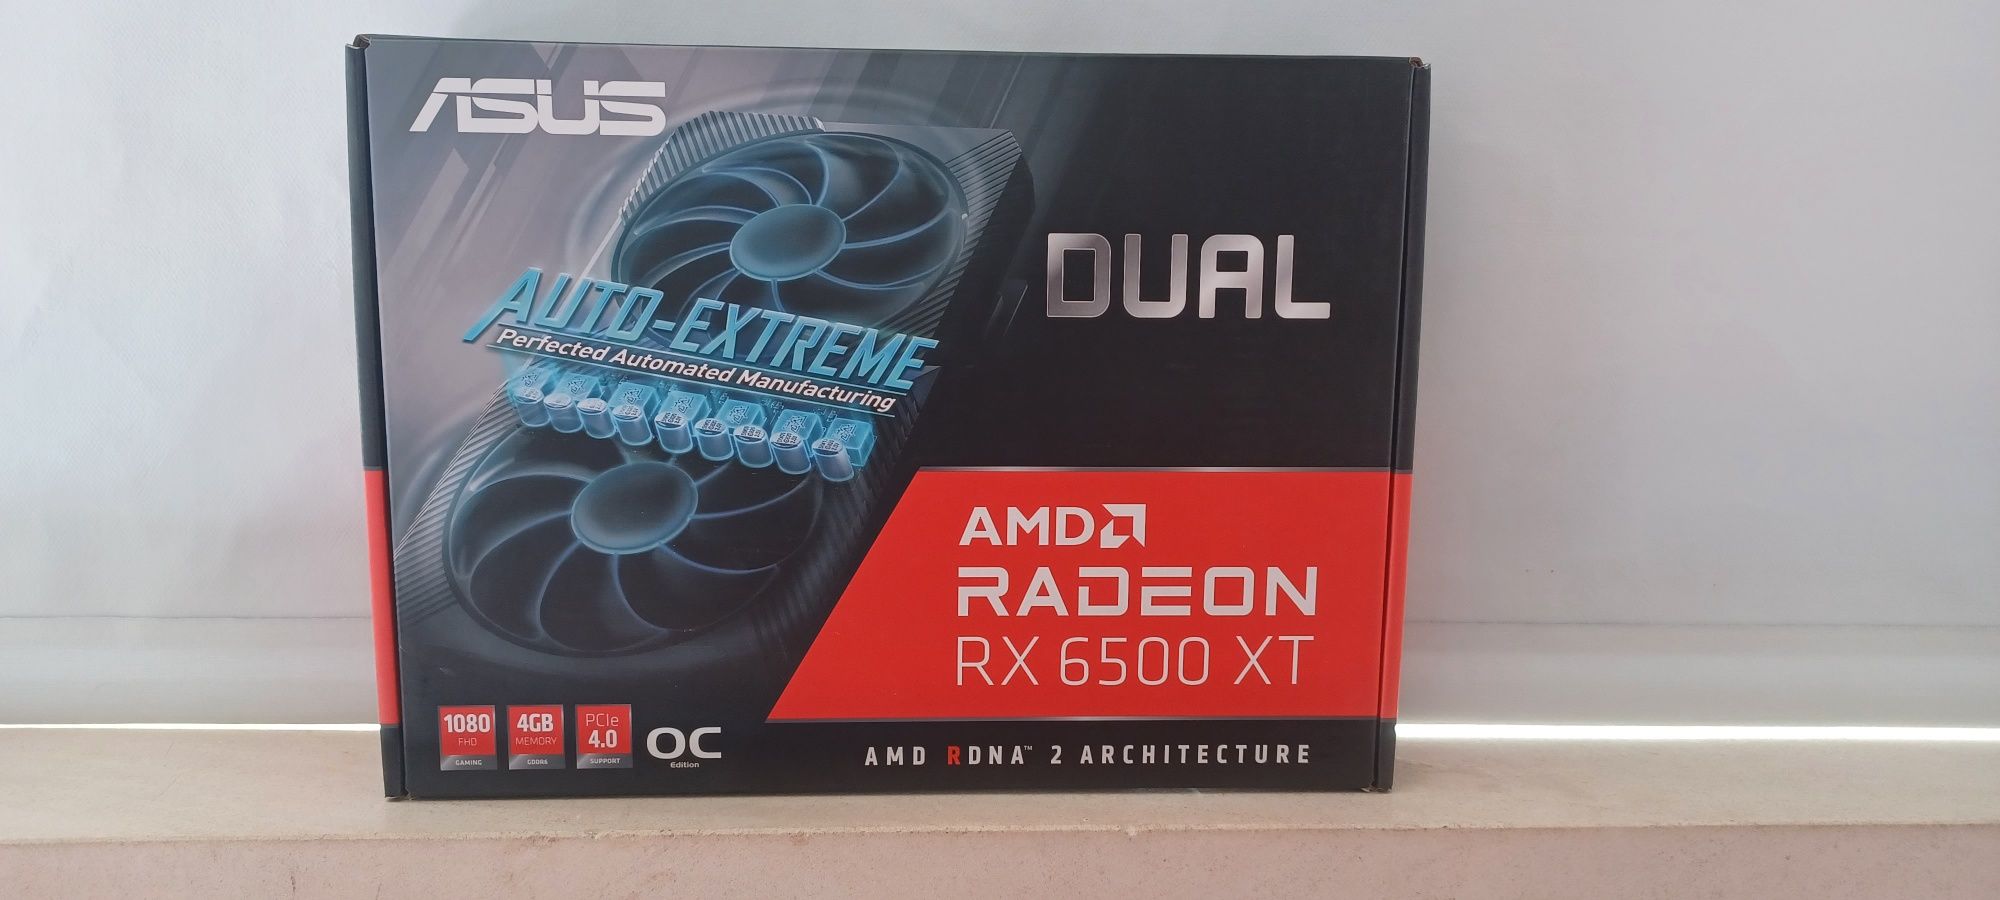 AMD RX 6500 XT - com caixa original